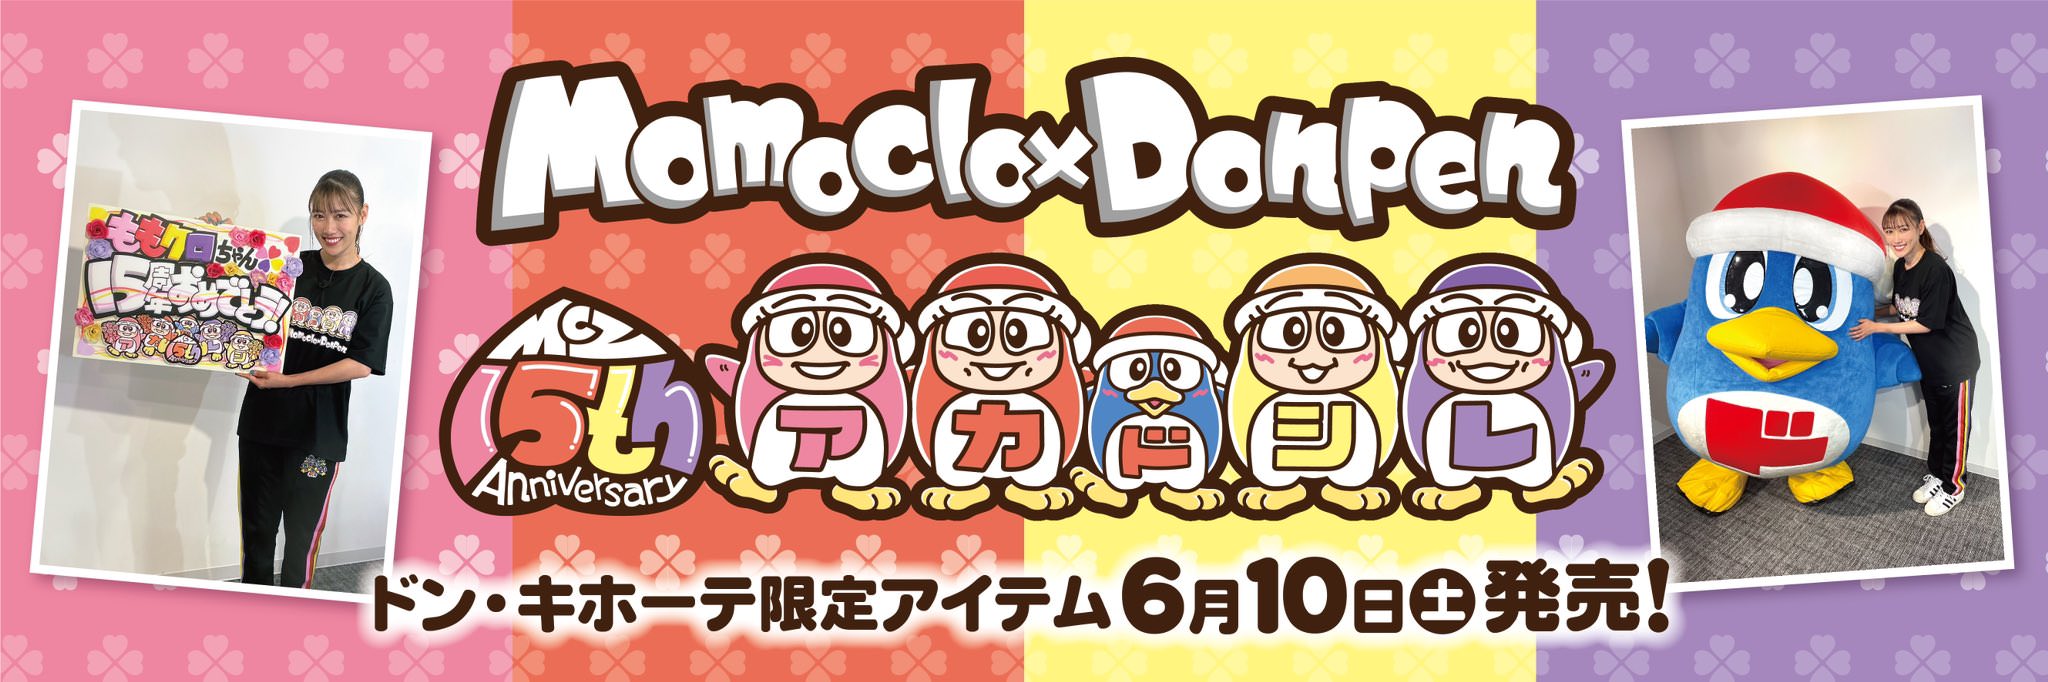 ももいろクローバーZ  × ドンキホーテ 6月10日よりコラボグッズ発売!